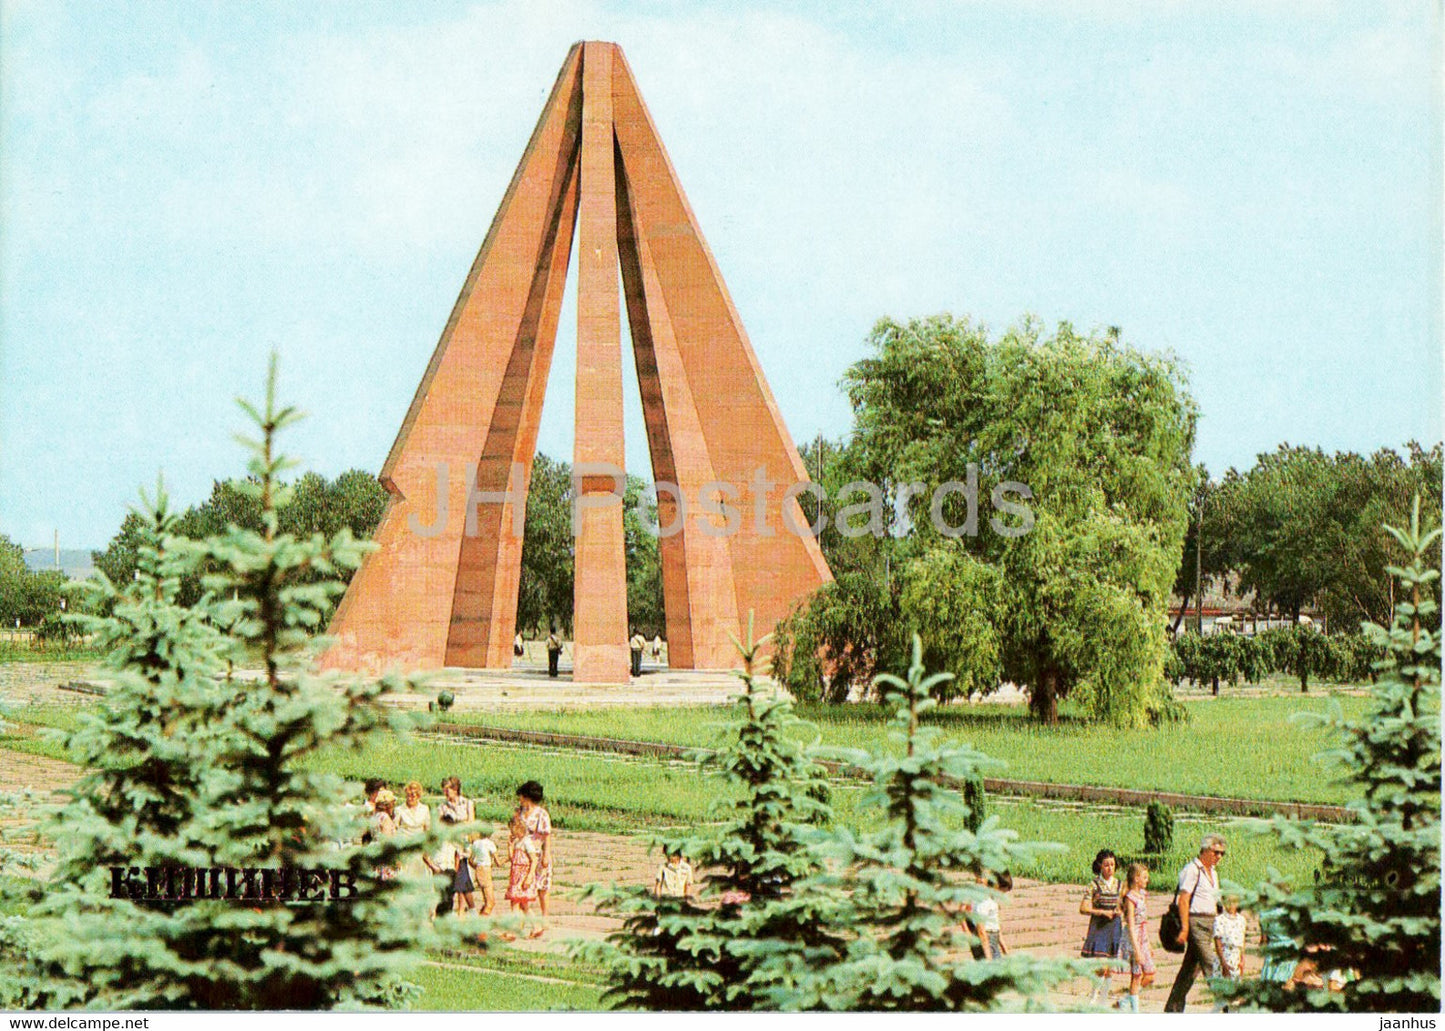 Memorial of Military Glory - Chisinau - Kishinev - 1 - 1983 - Moldova USSR - unused - JH Postcards